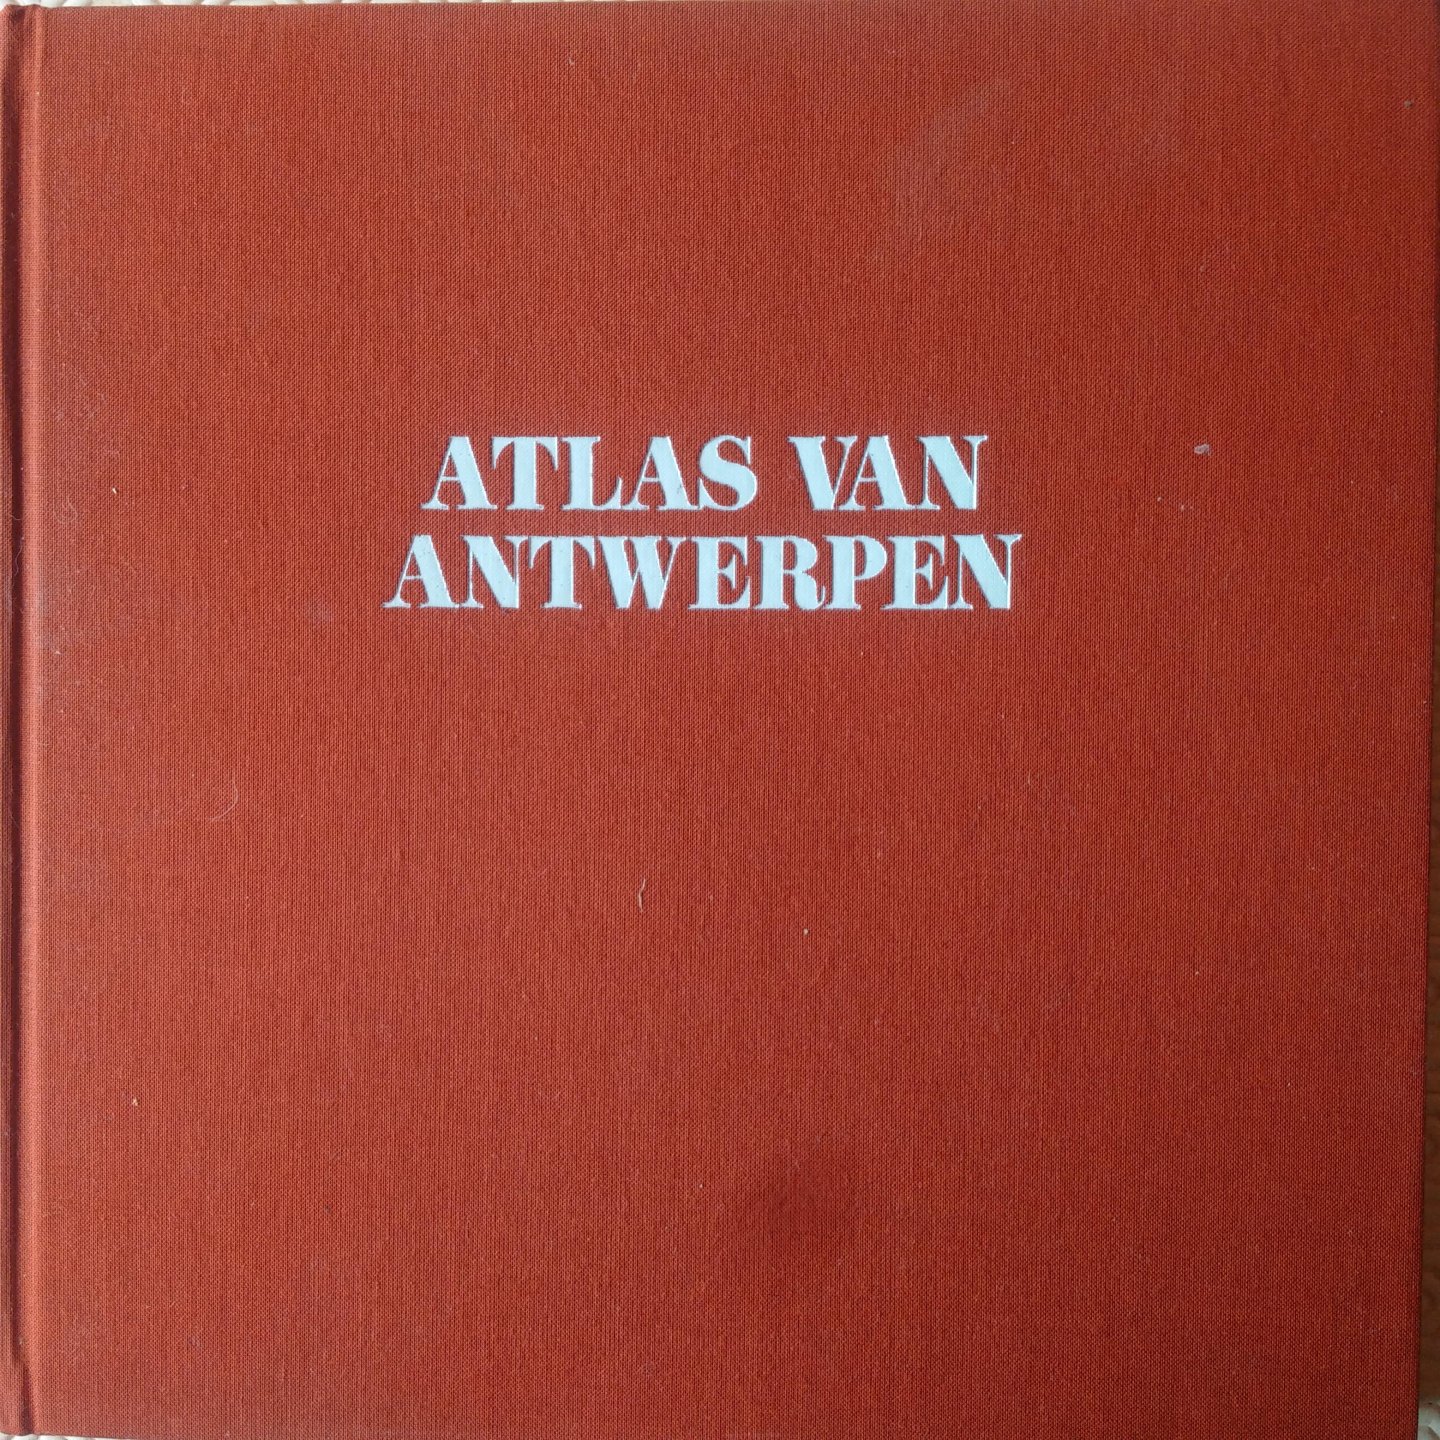 Binnemans, Roger & Cauwenbergh, George van - Atlas van Antwerpen. Evolutie van een stedelijk landschap van 1850 tot heden